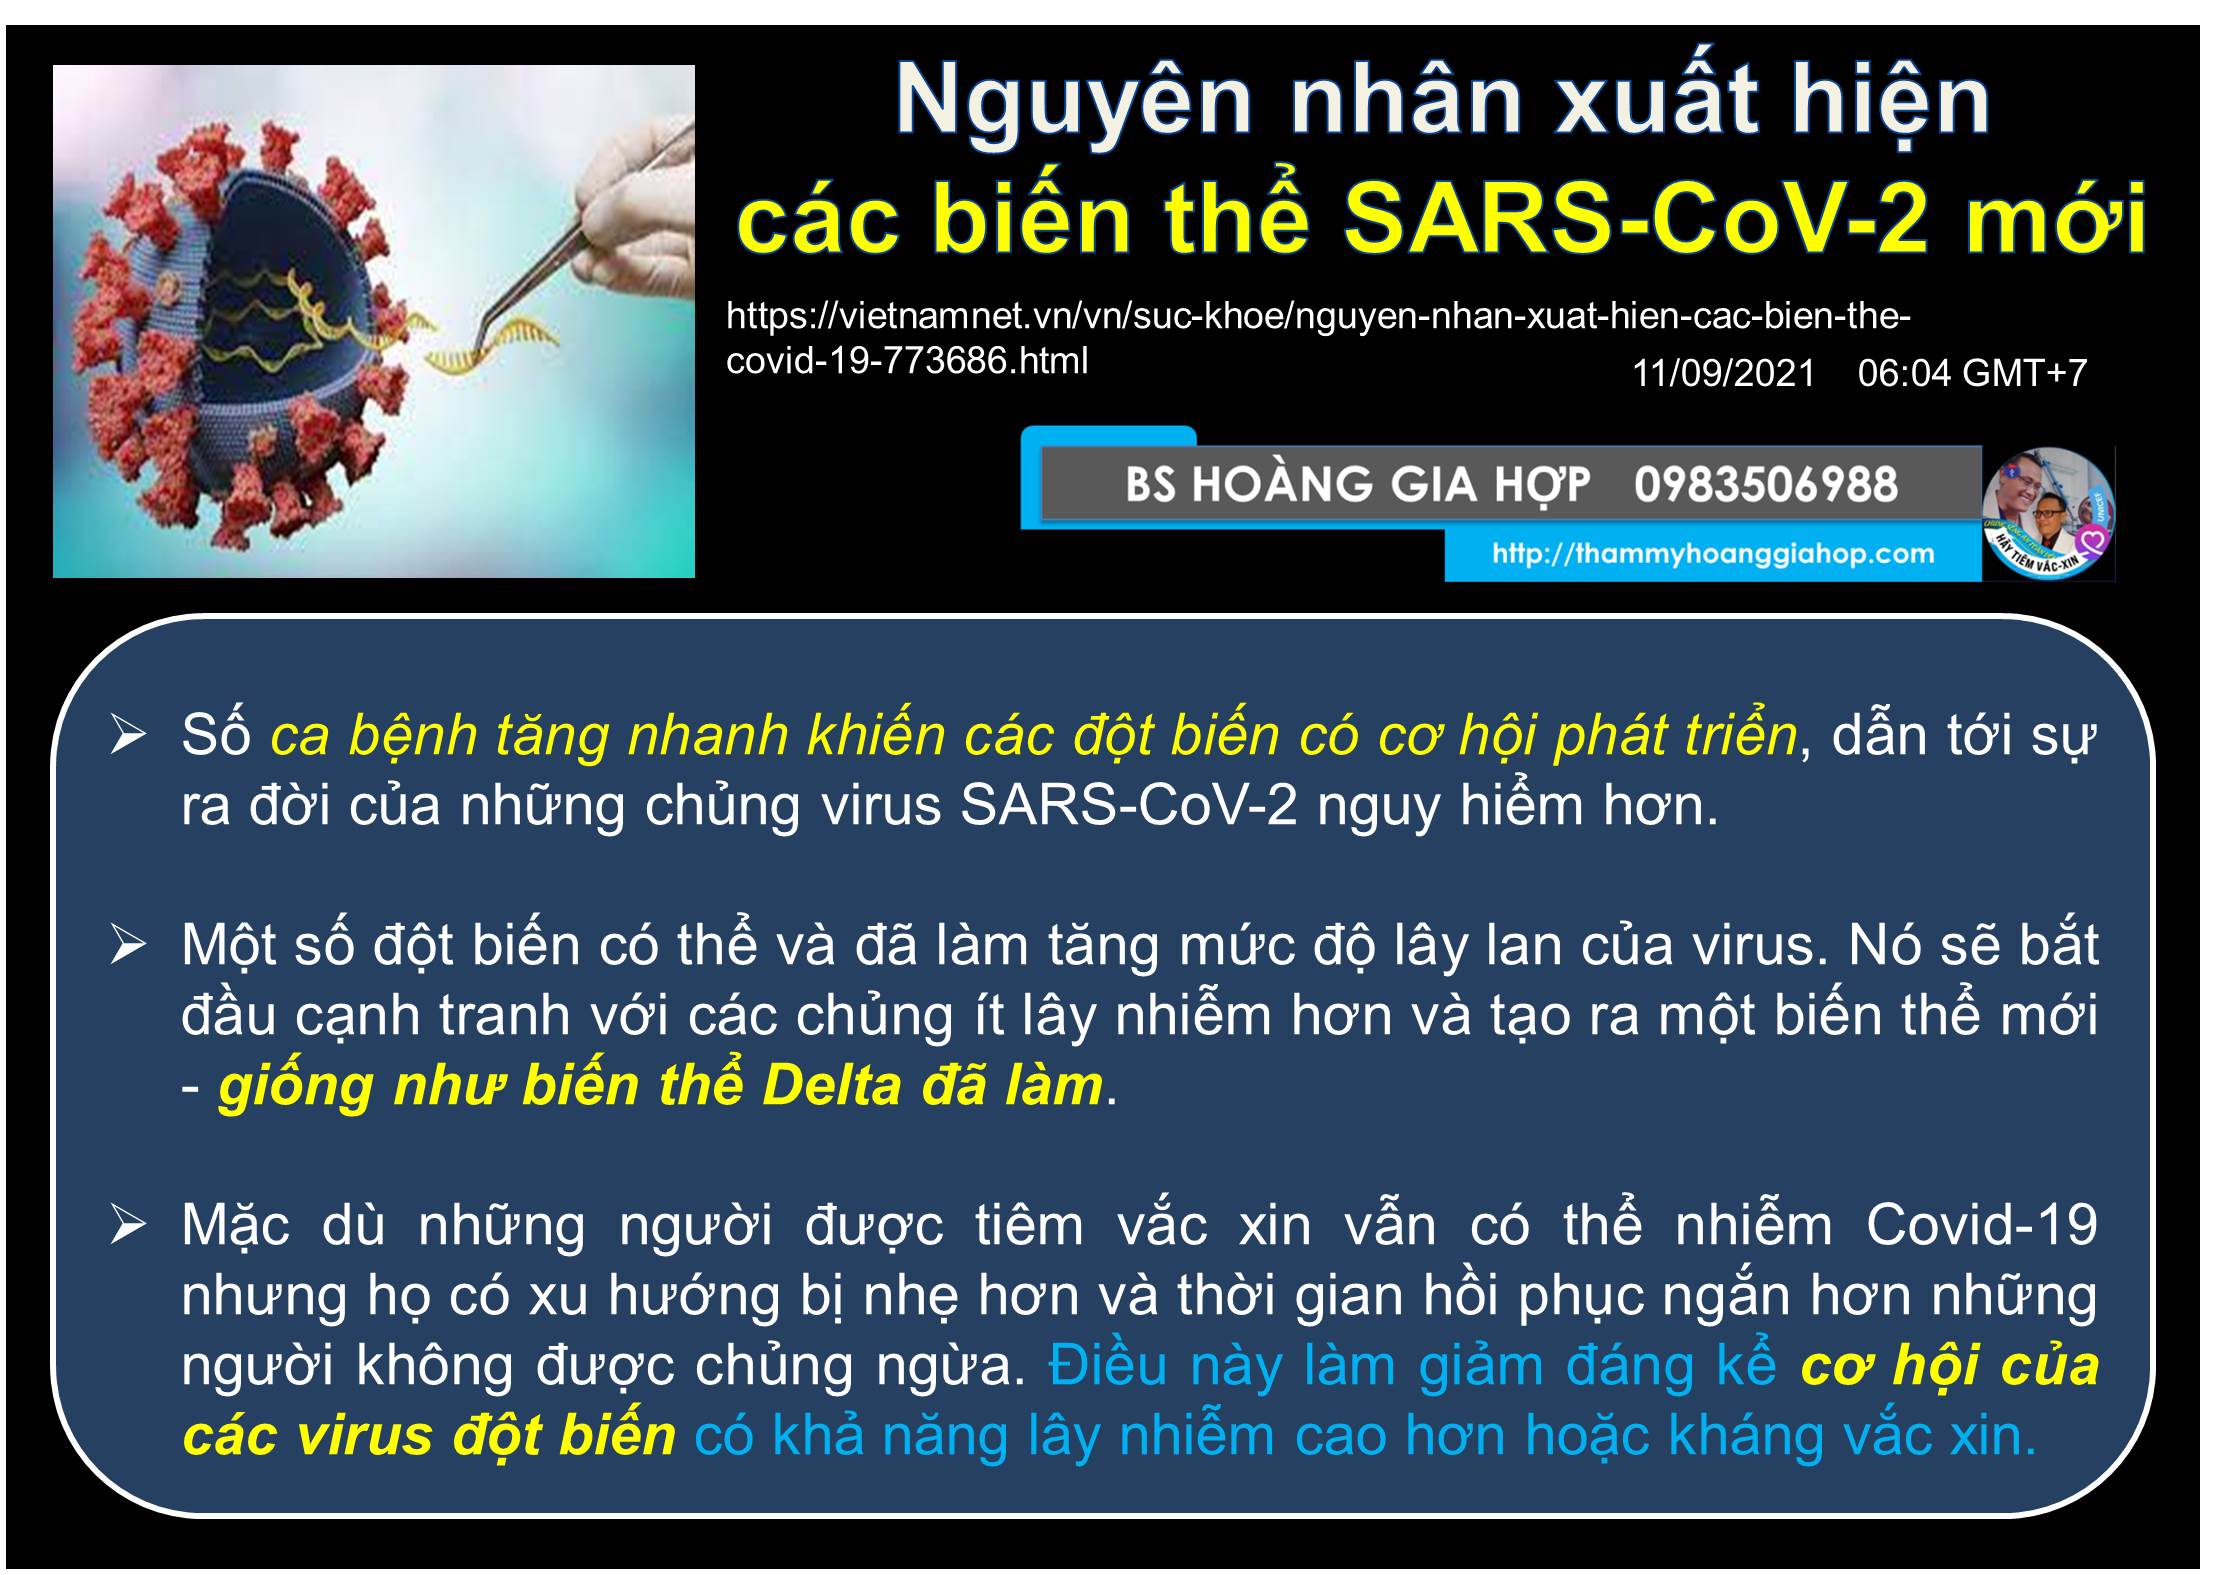 NGUYÊN NHÂN XUẤT HIỆN CÁC BIẾN THỂ SARS-COV-2 MỚI